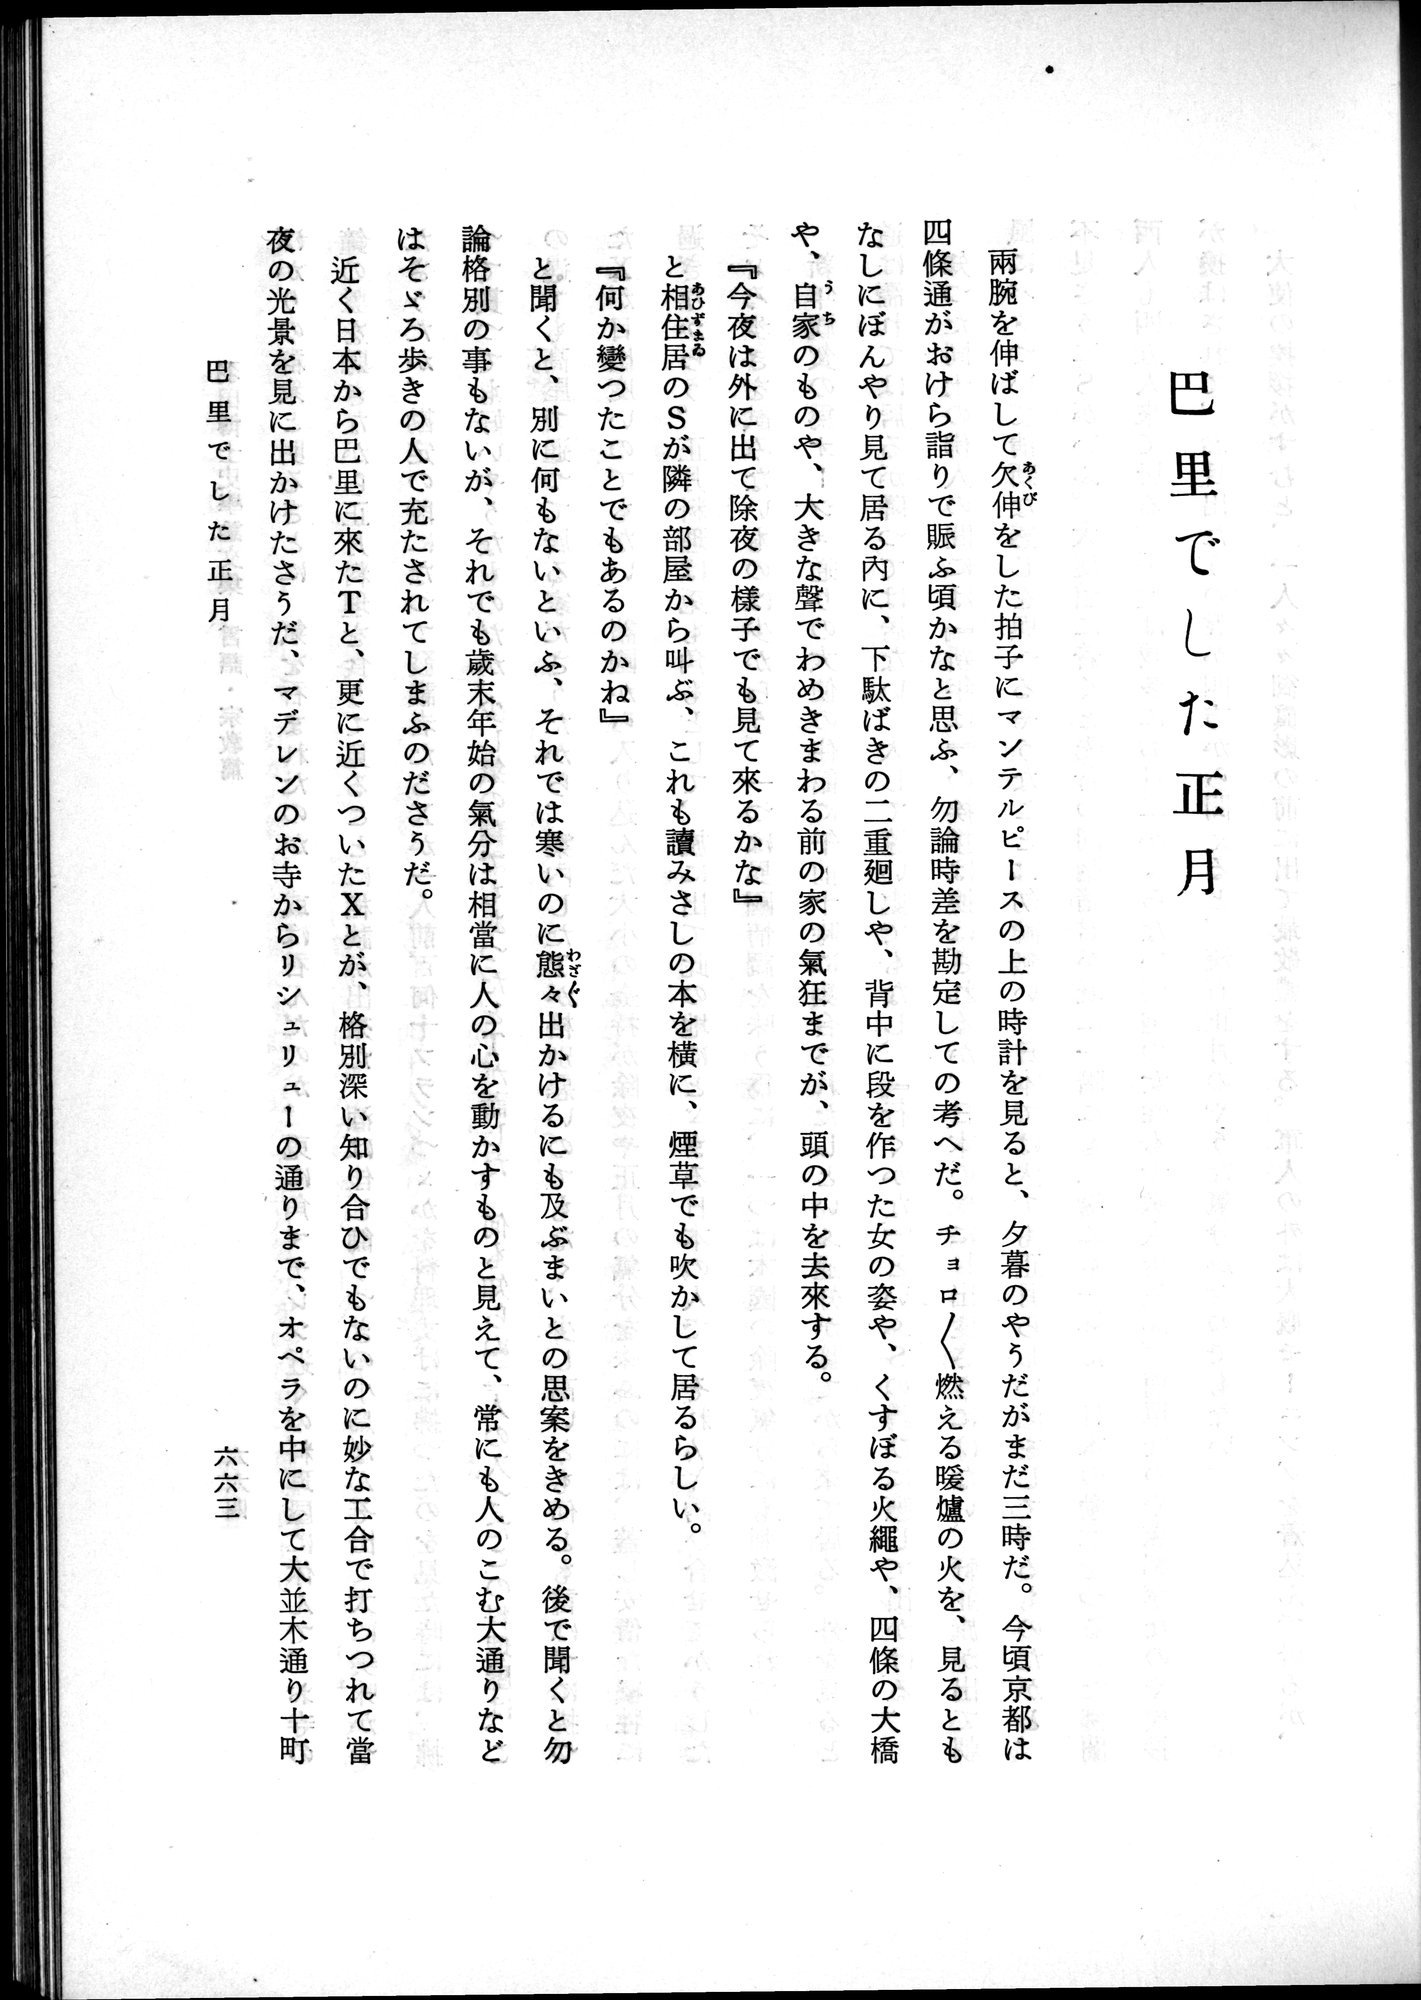 羽田博士史学論文集 : vol.2 / Page 727 (Grayscale High Resolution Image)